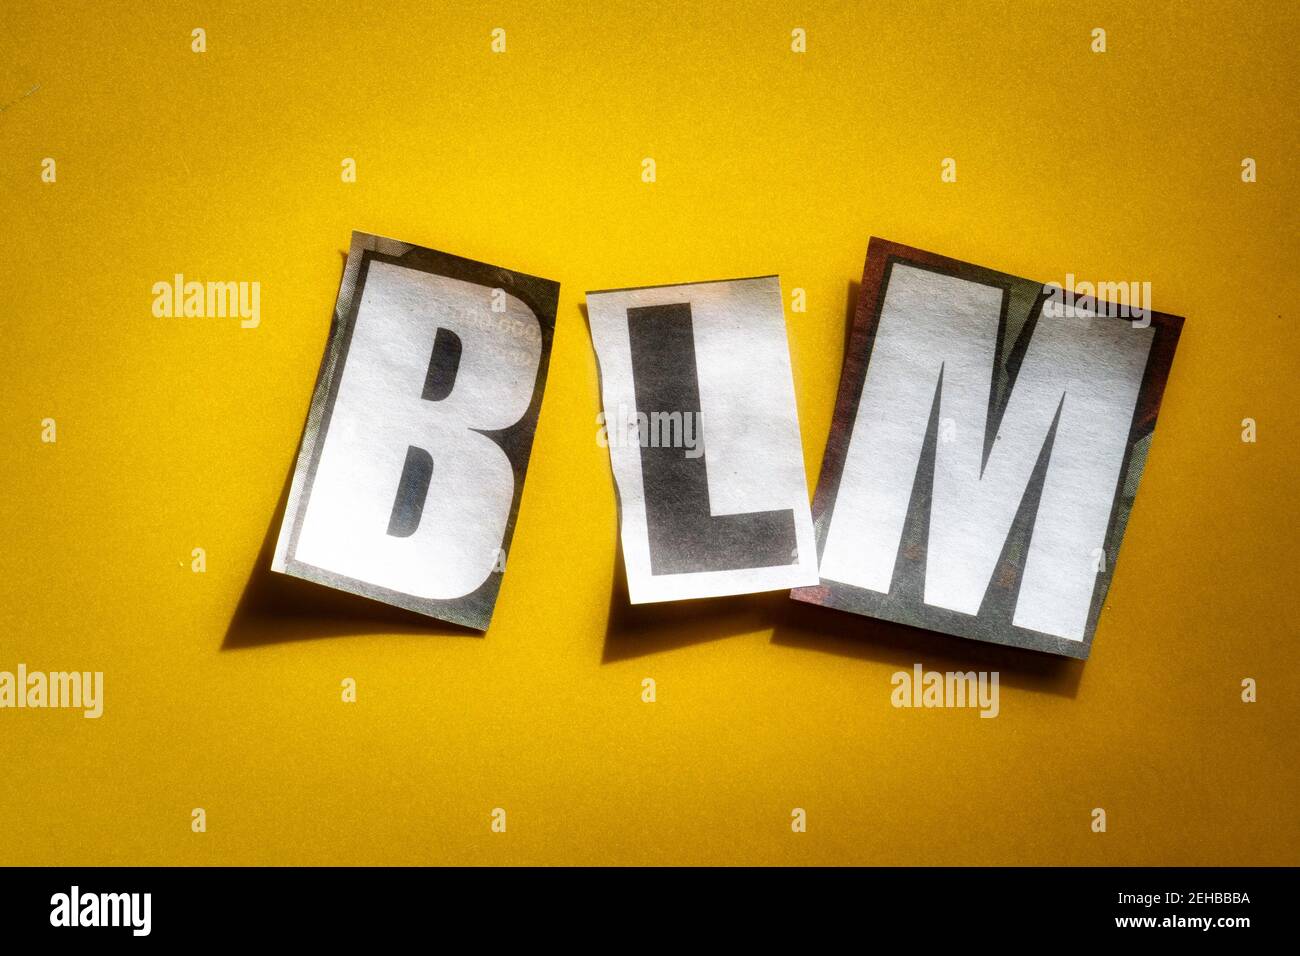 Las cartas BLM para vidas negras importan usando papel cortado letras en la tipografía efecto de la nota del rescate Foto de stock